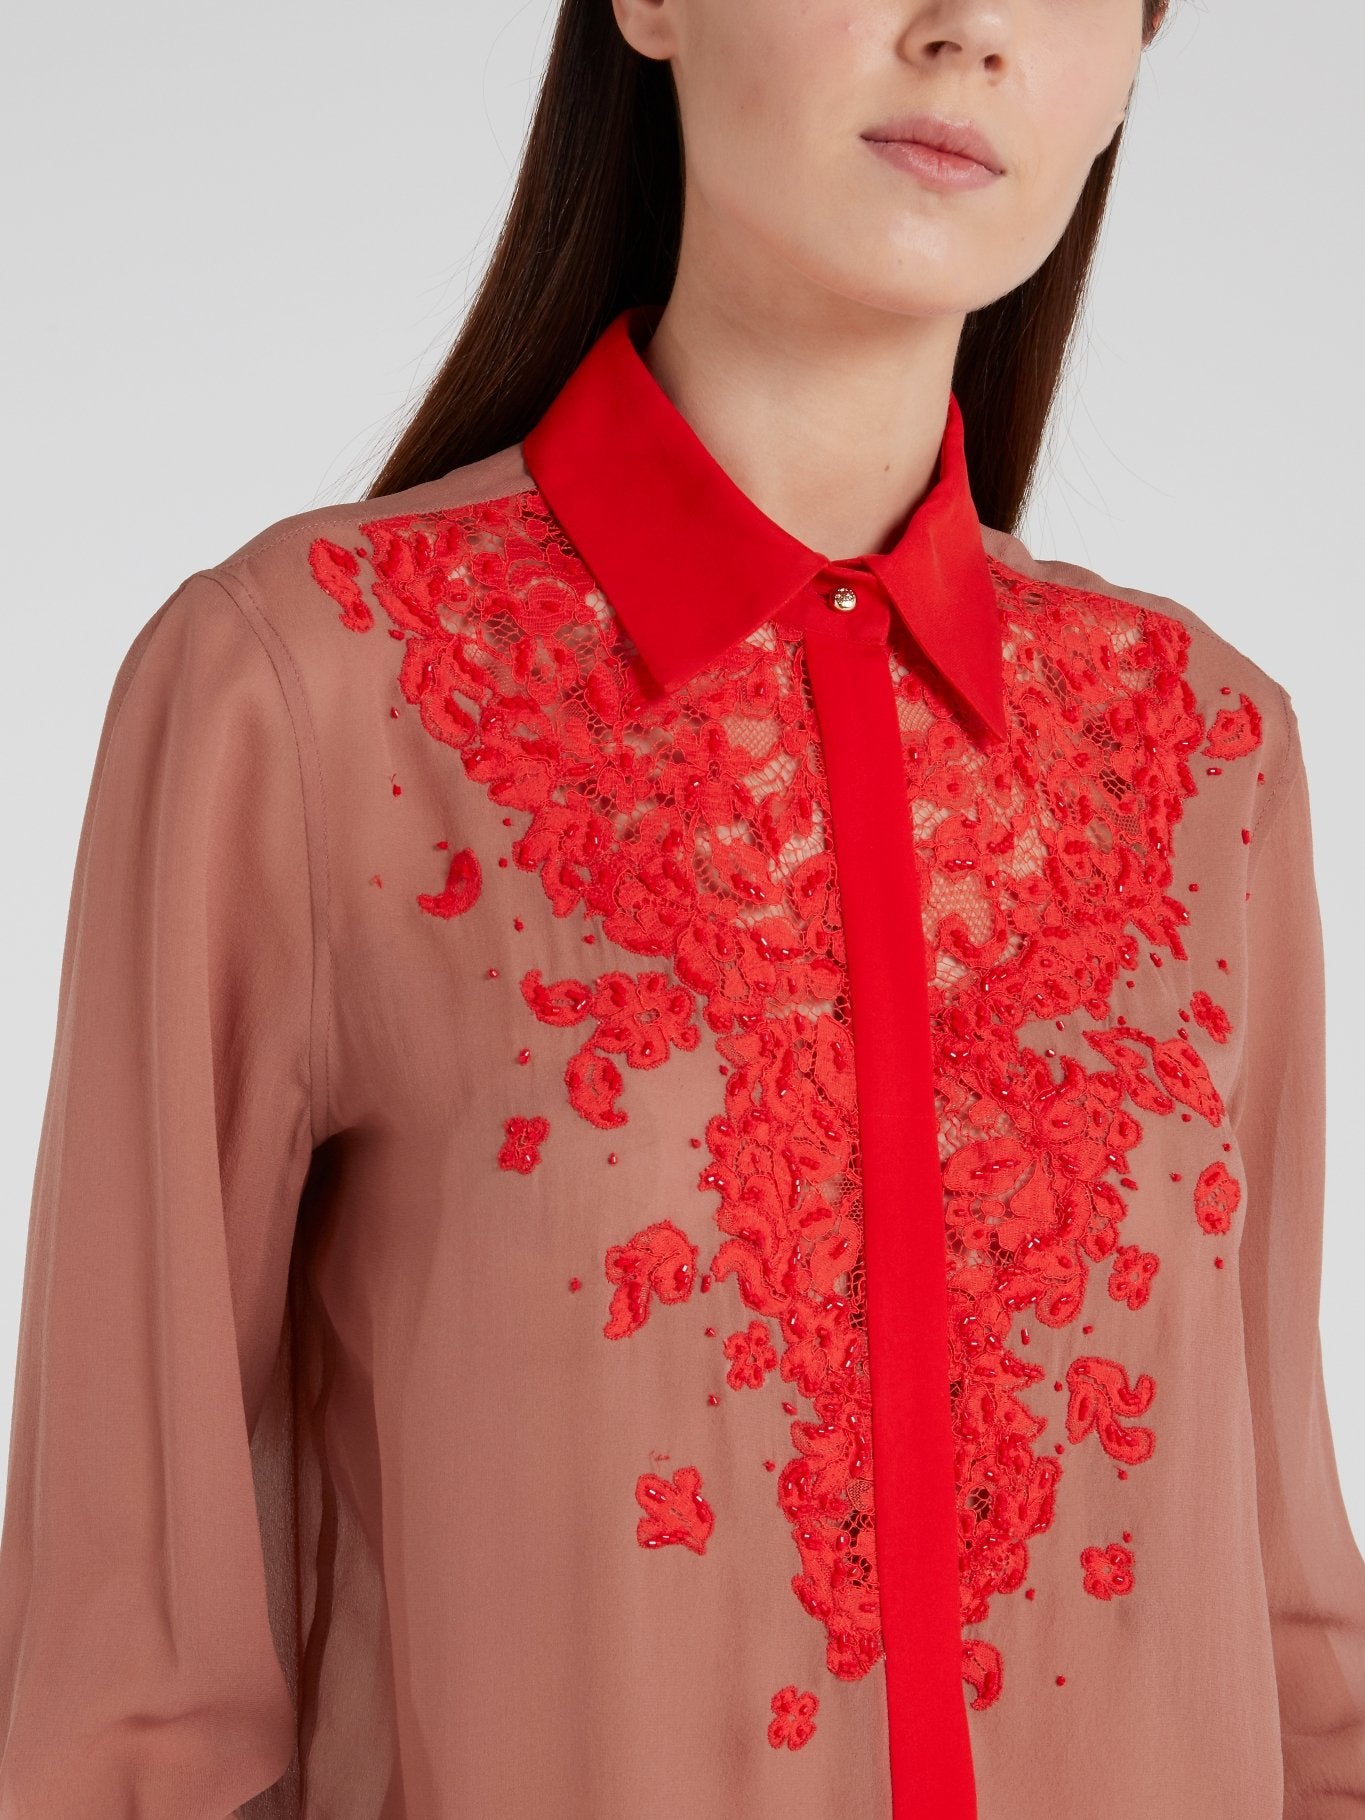 Красная блузка с кружевом и принтом пейсли